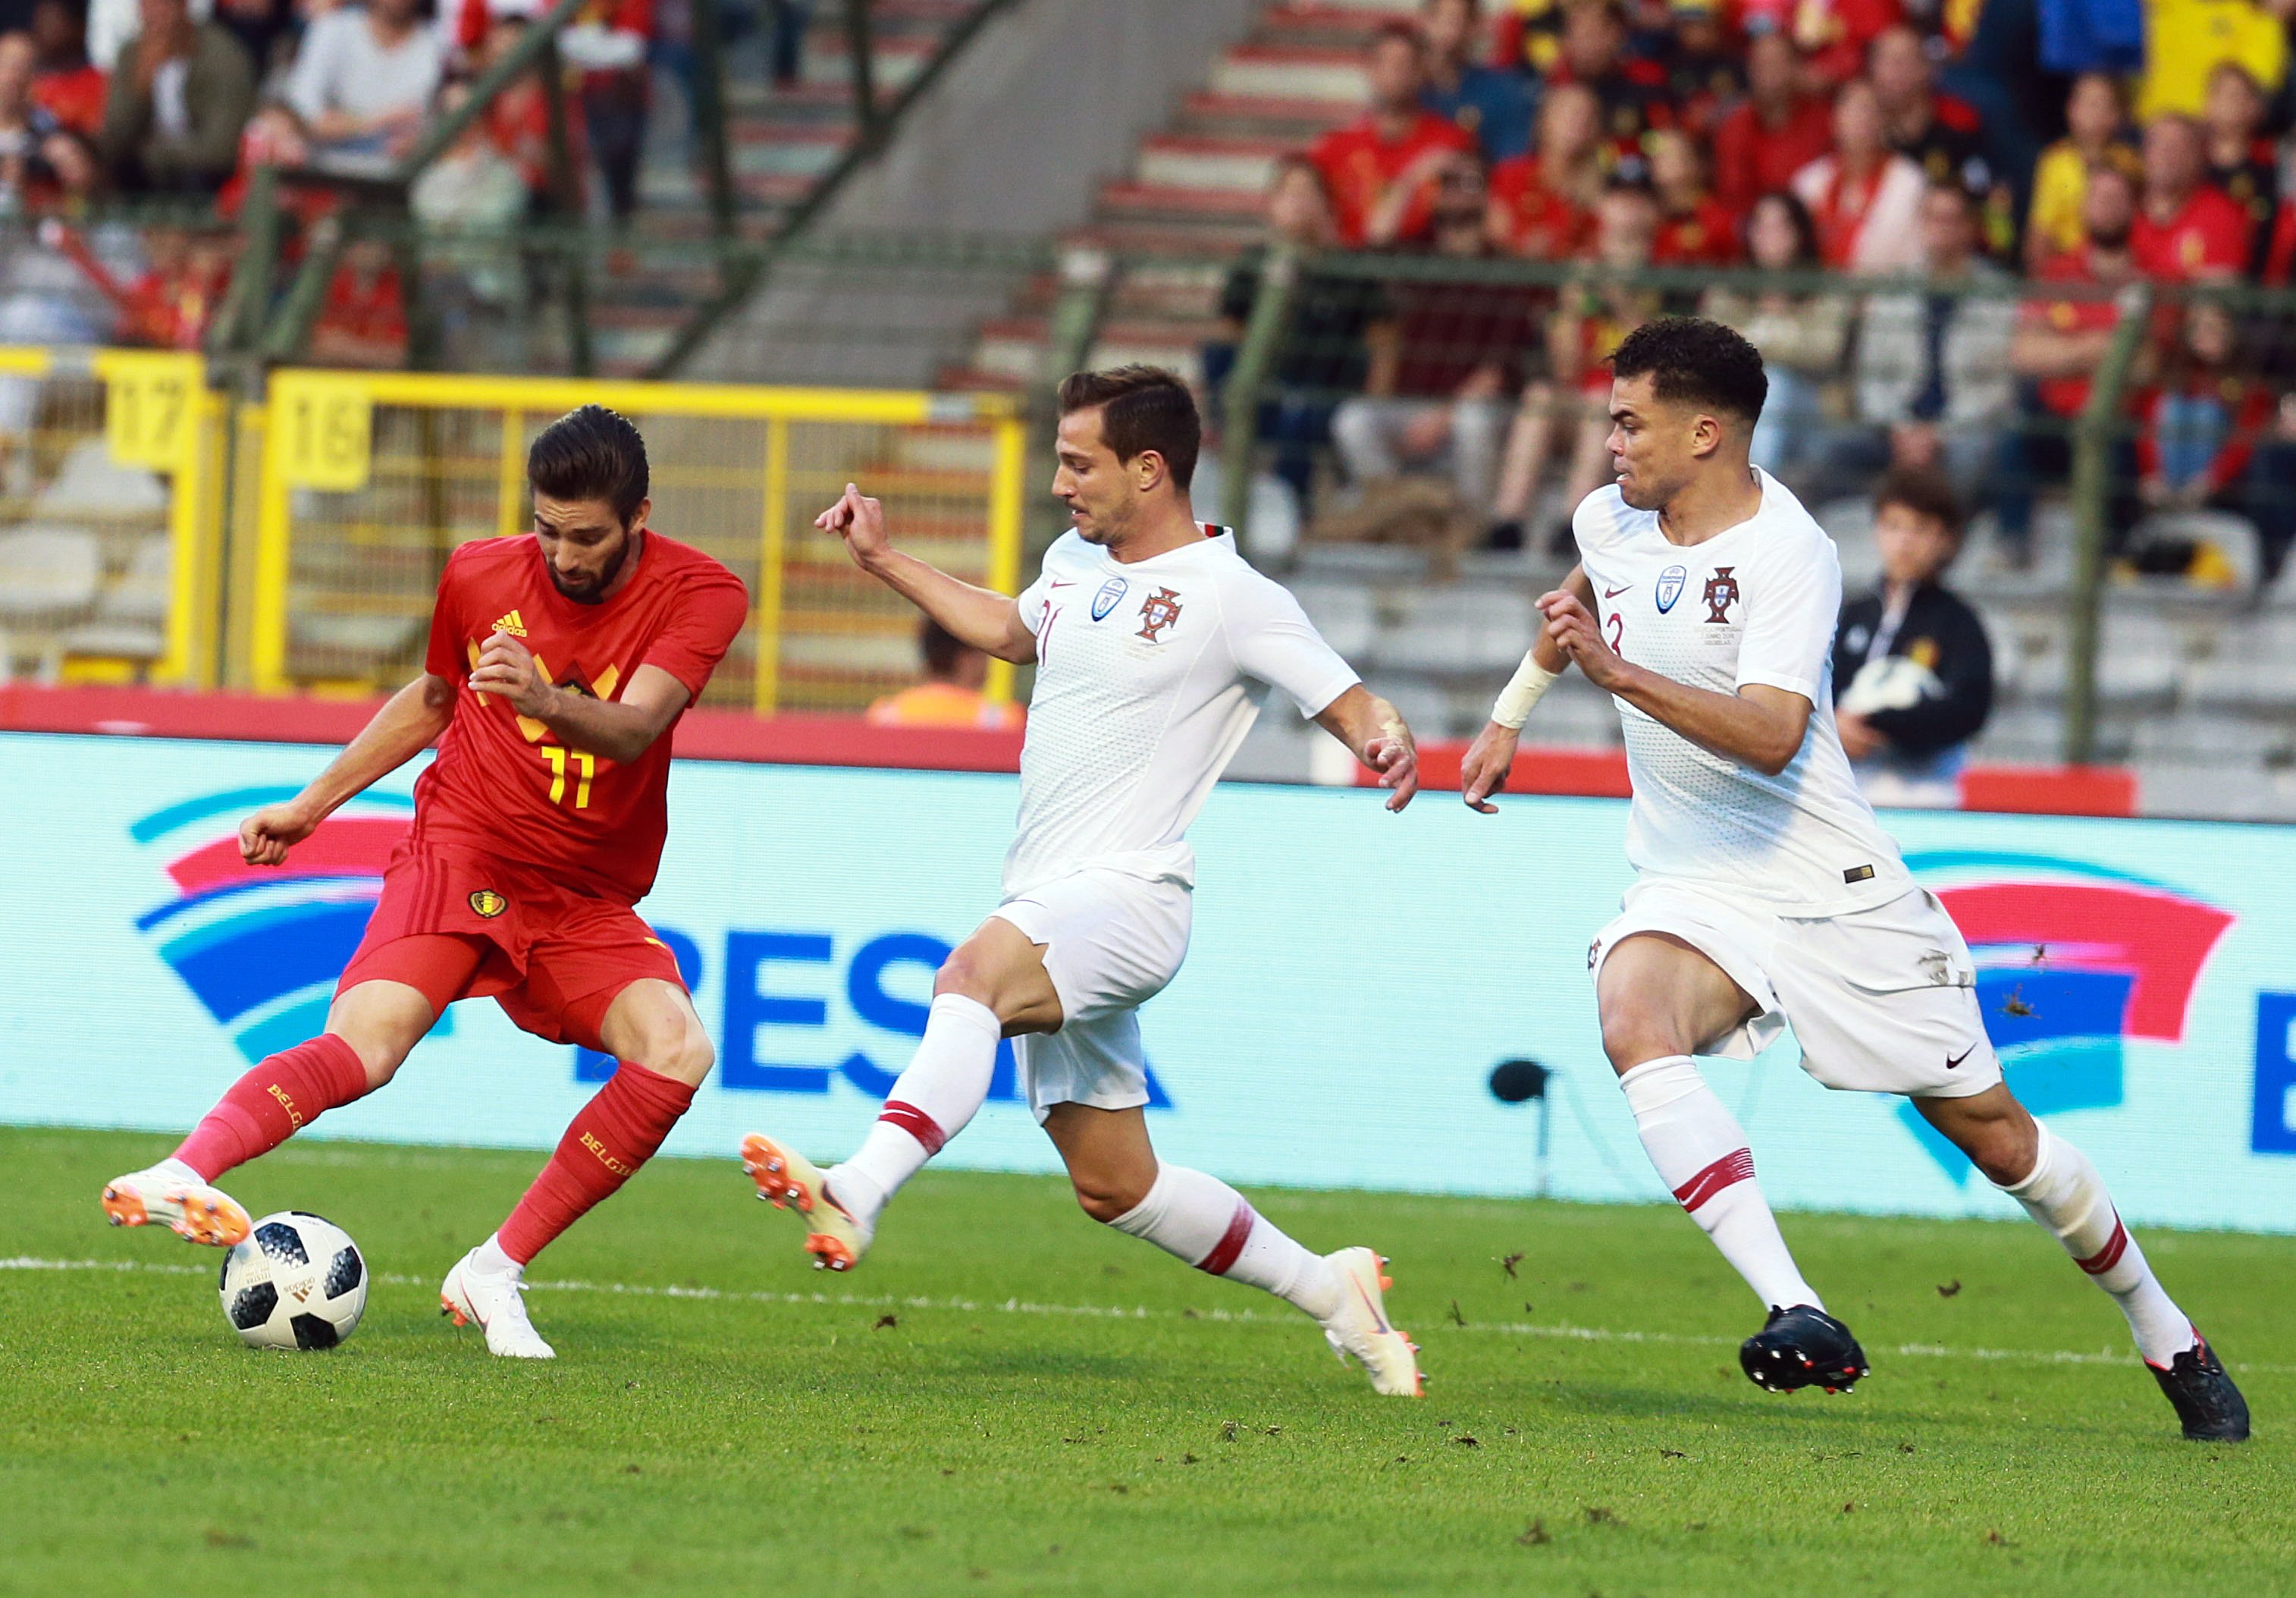 Portugal empata na Bélgica no segundo encontro de preparação para o Mundial2018